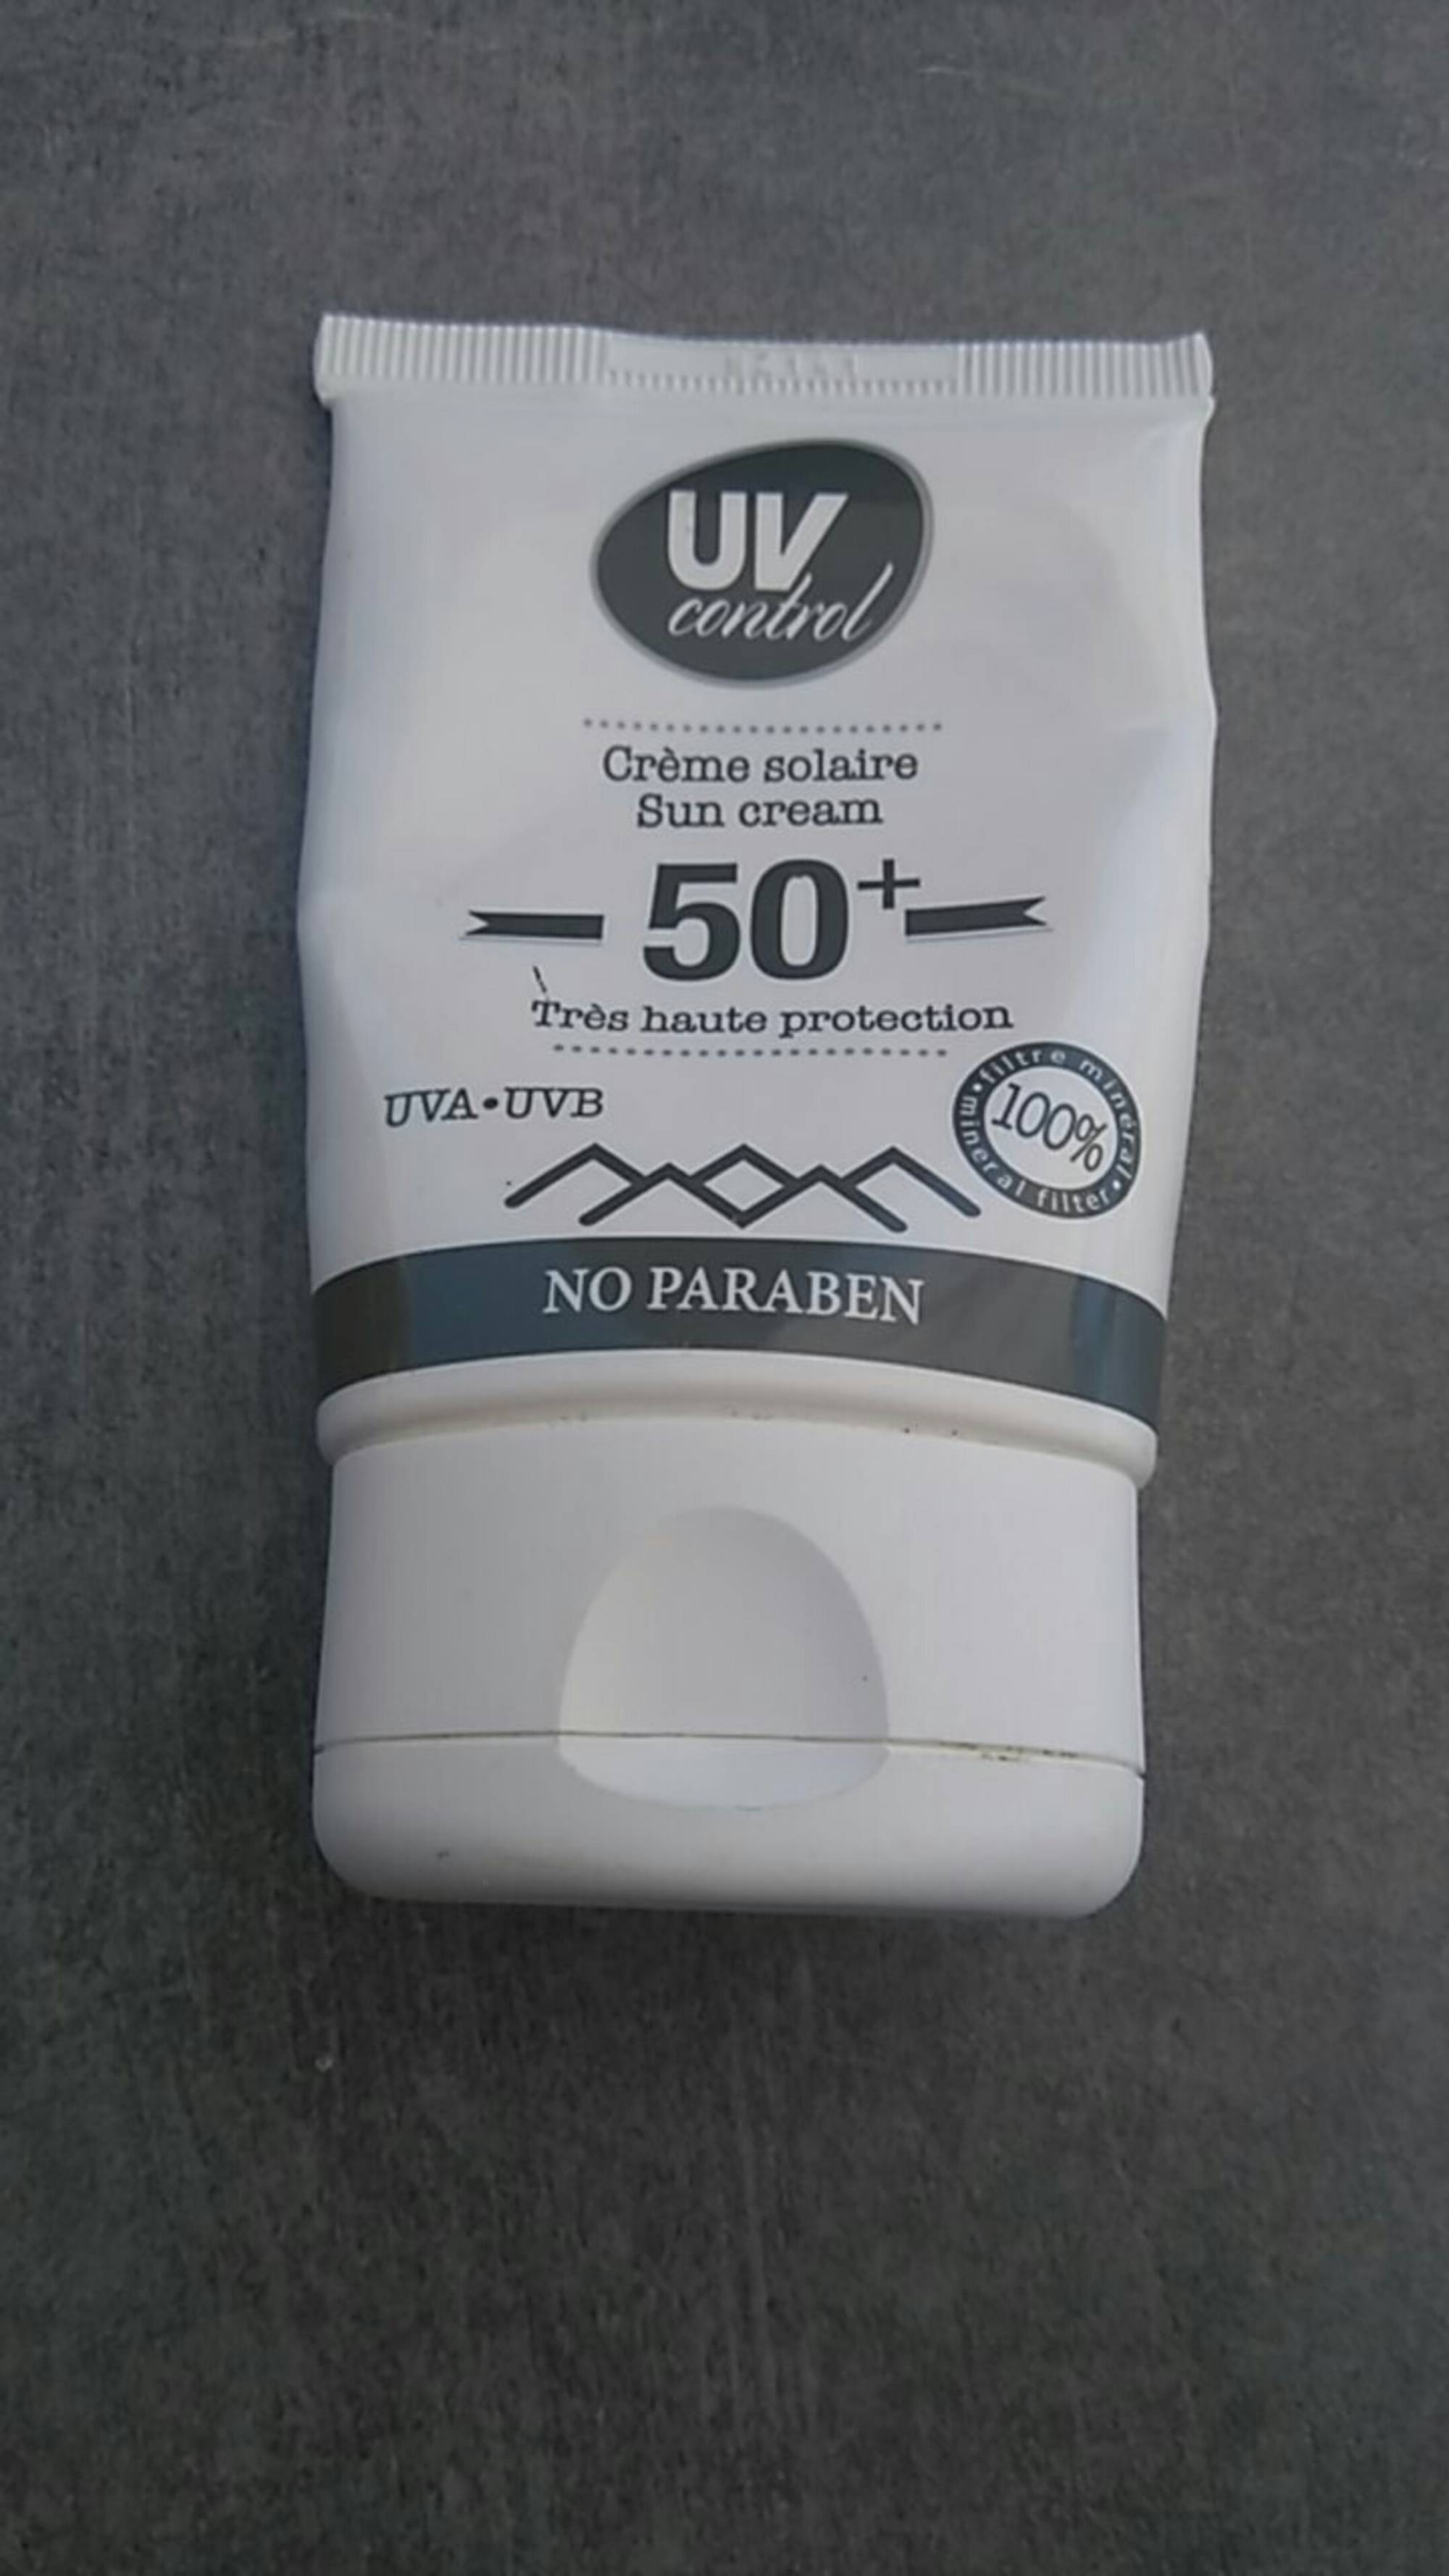 UV CONTROL - Crème solaire 50+  très haute protection